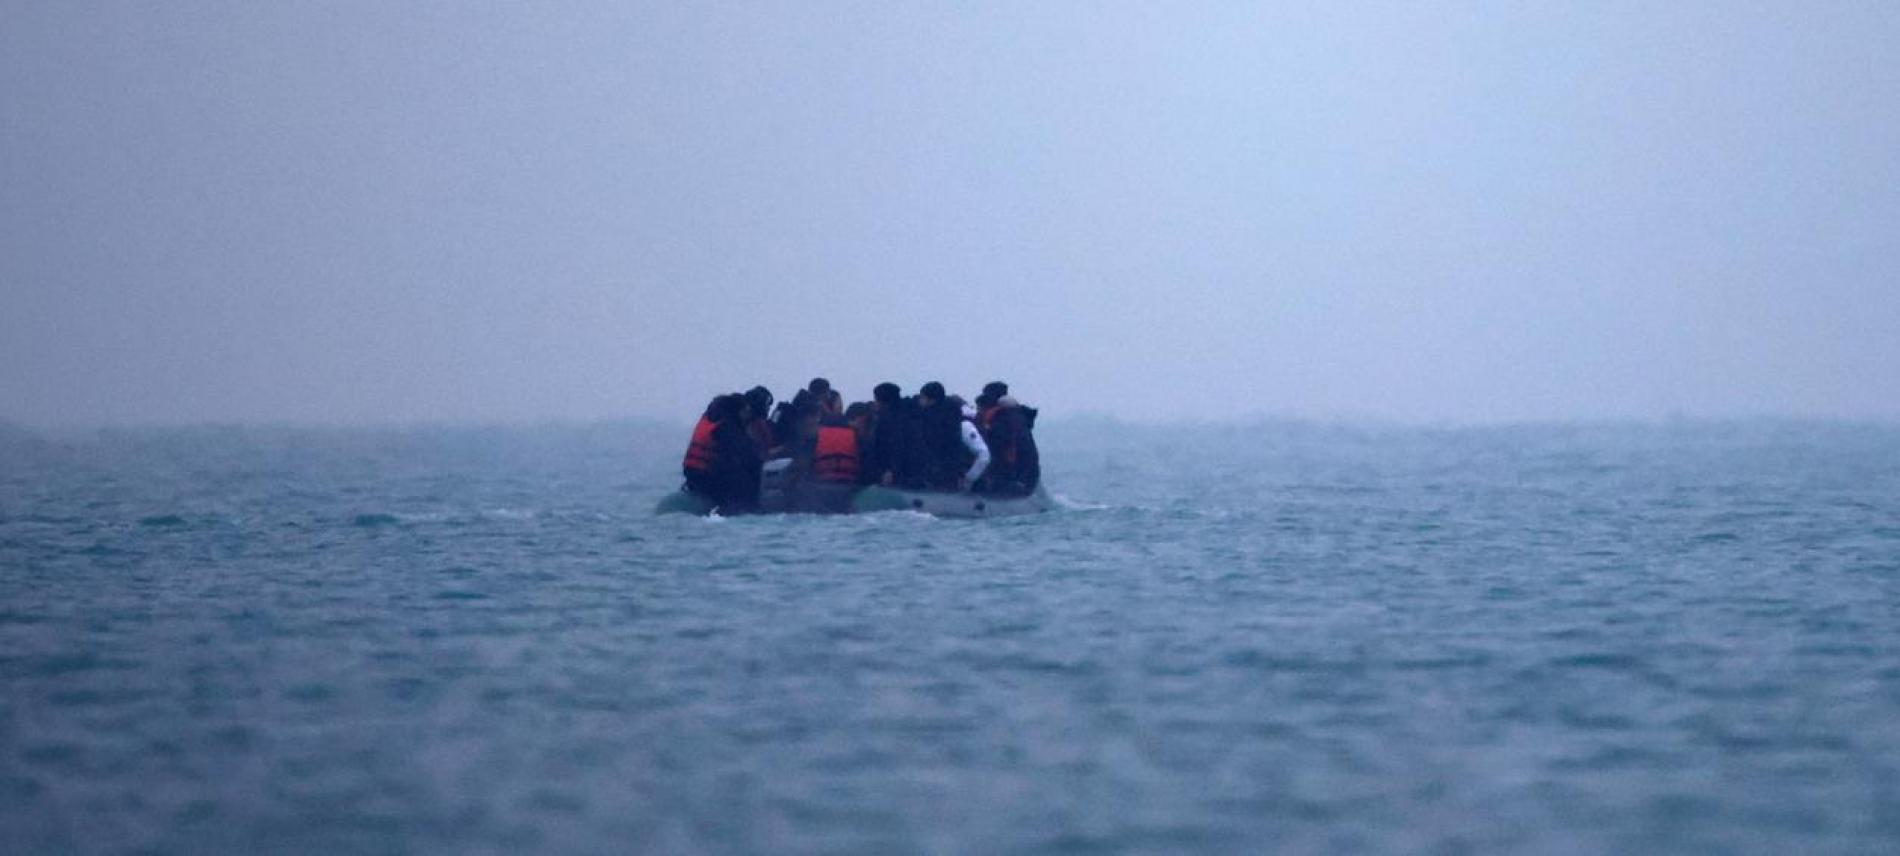 Ein Boot voller geflüchteter Menschen treibt im Meer. Eine Tragödie, für die die Politik verantwortlich ist. Foto: Ärzte der Welt